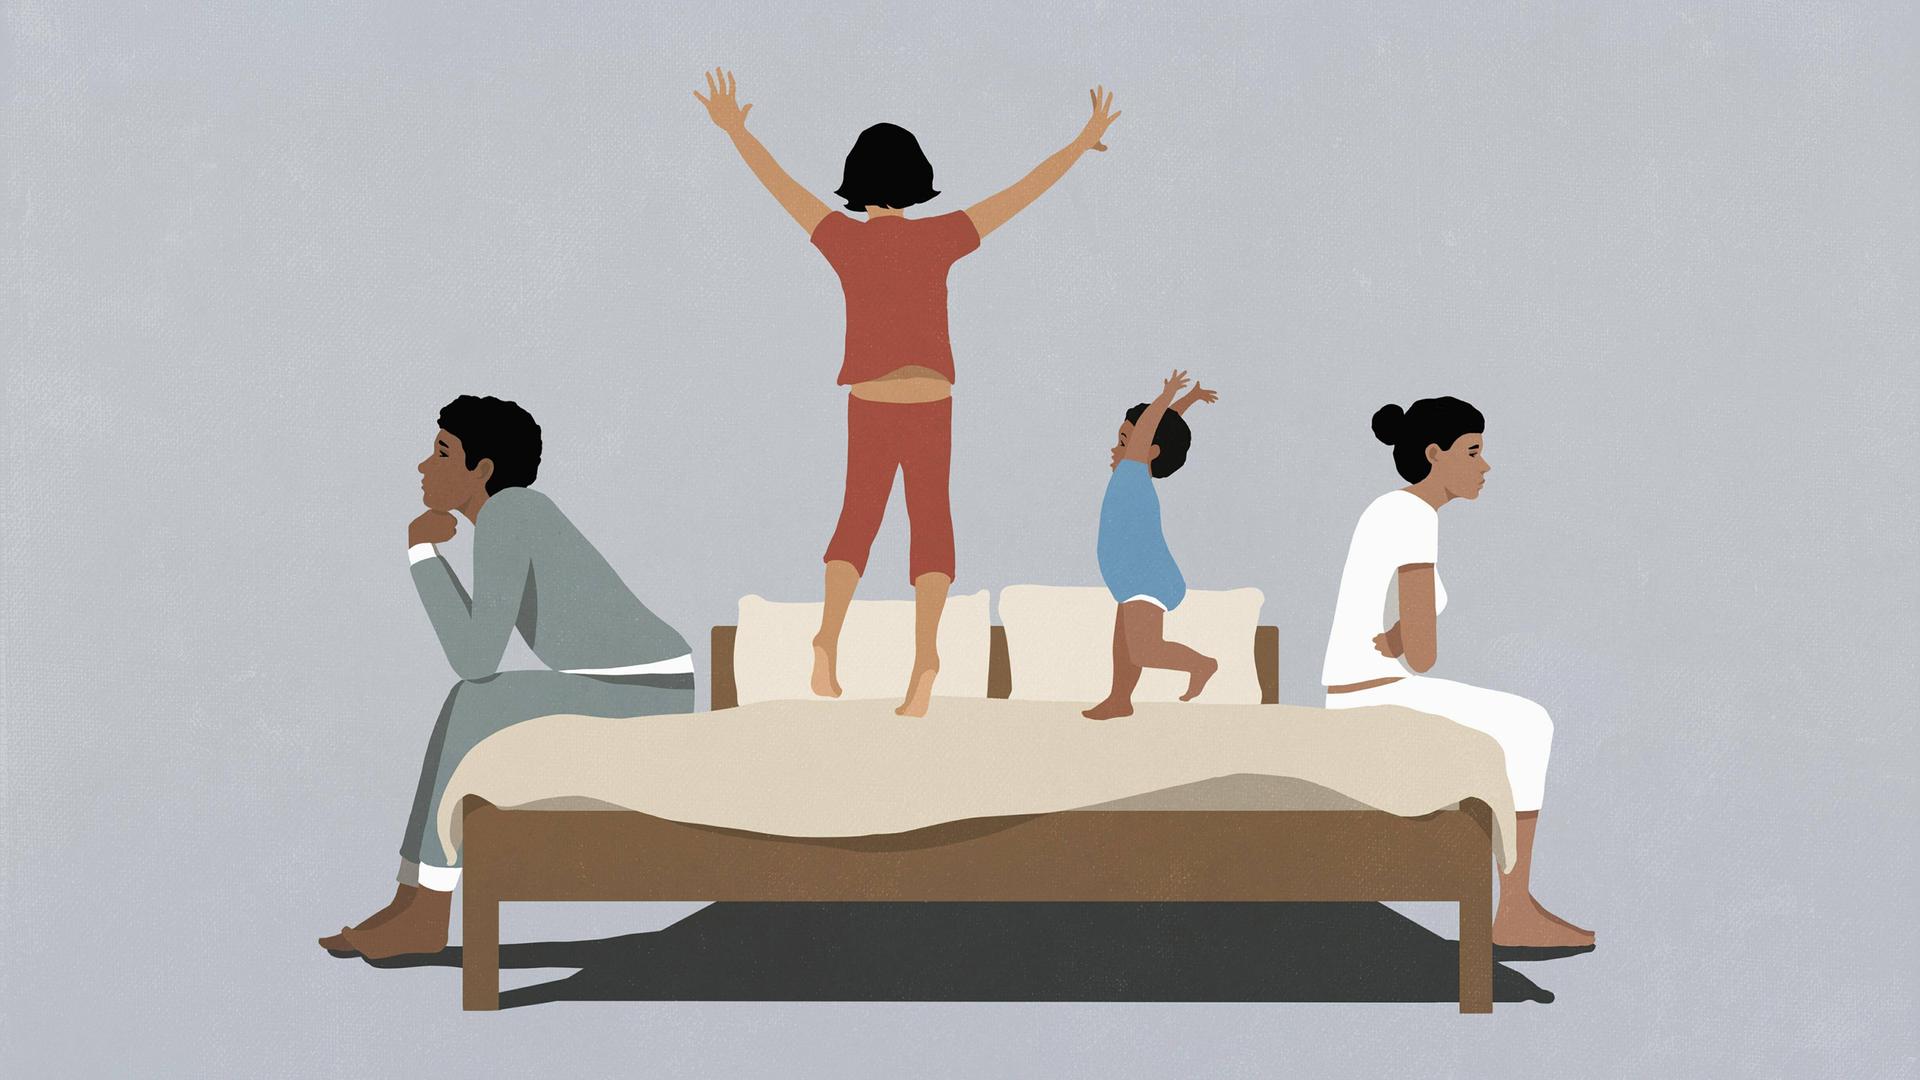 Kinder spielen und springen auf einem Bett, während die Eltern frustiert auf der Bettkante sitzen.